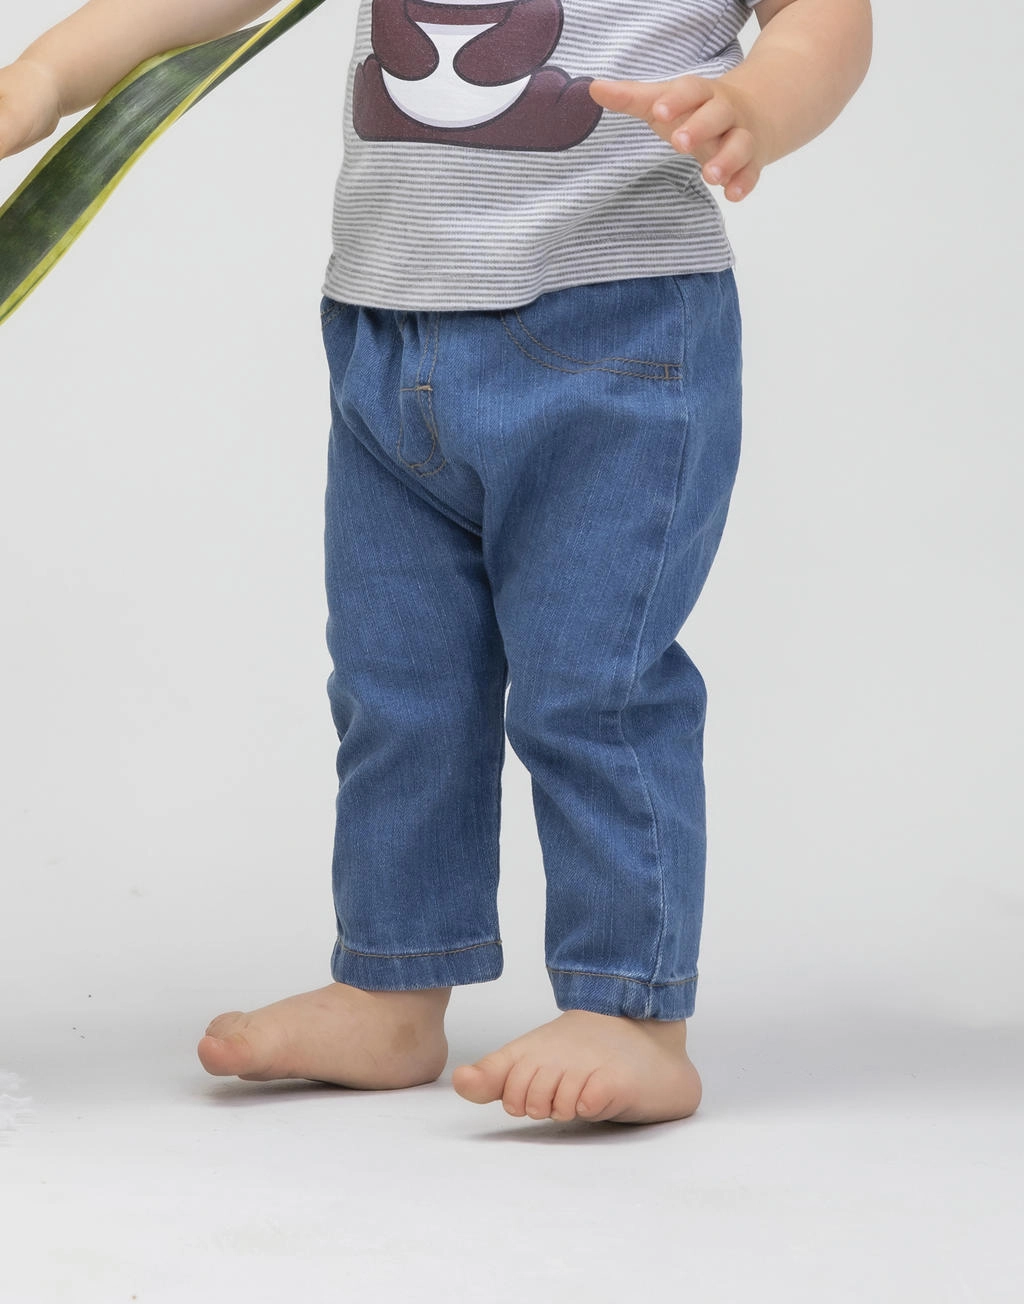 Baby Rocks Denim Trousers zum Besticken und Bedrucken mit Ihren Logo, Schriftzug oder Motiv.